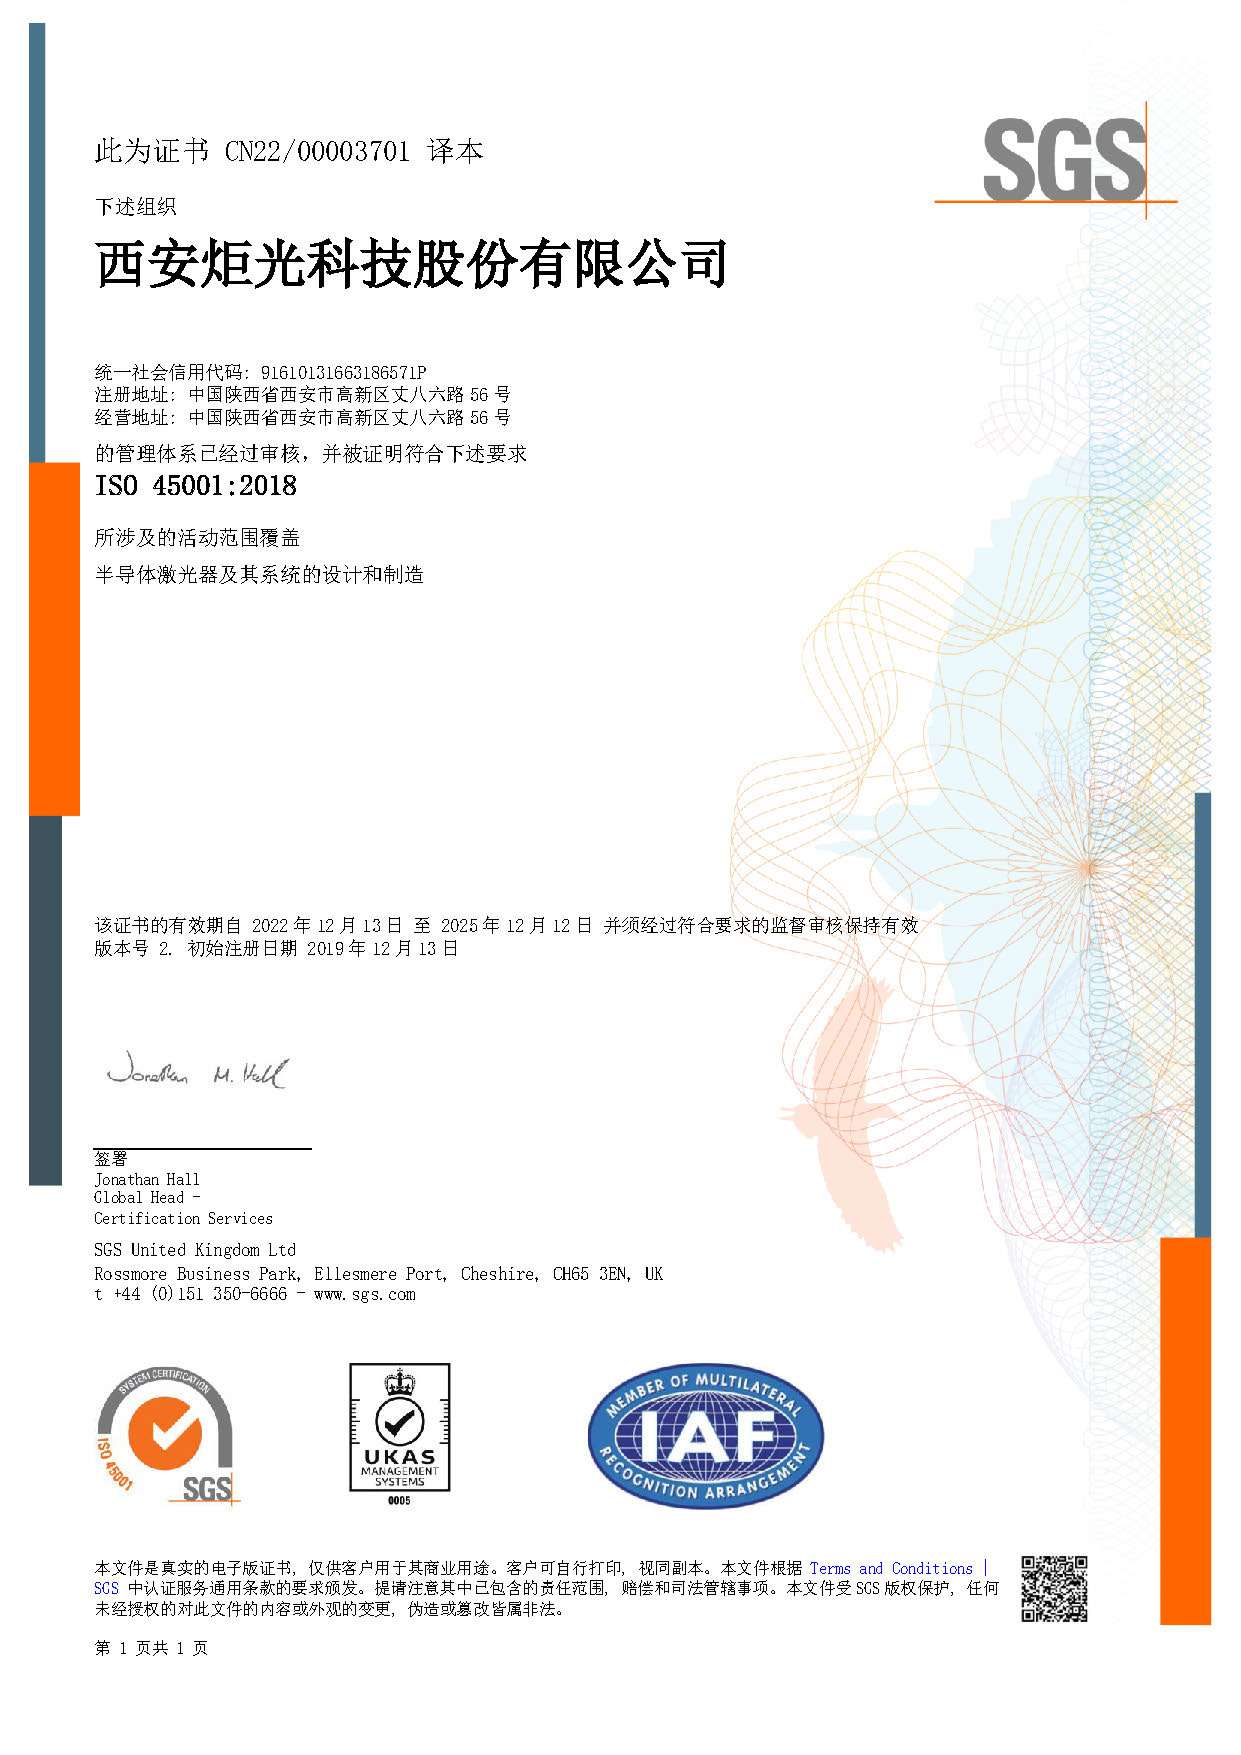 ISO 45001 西安总部